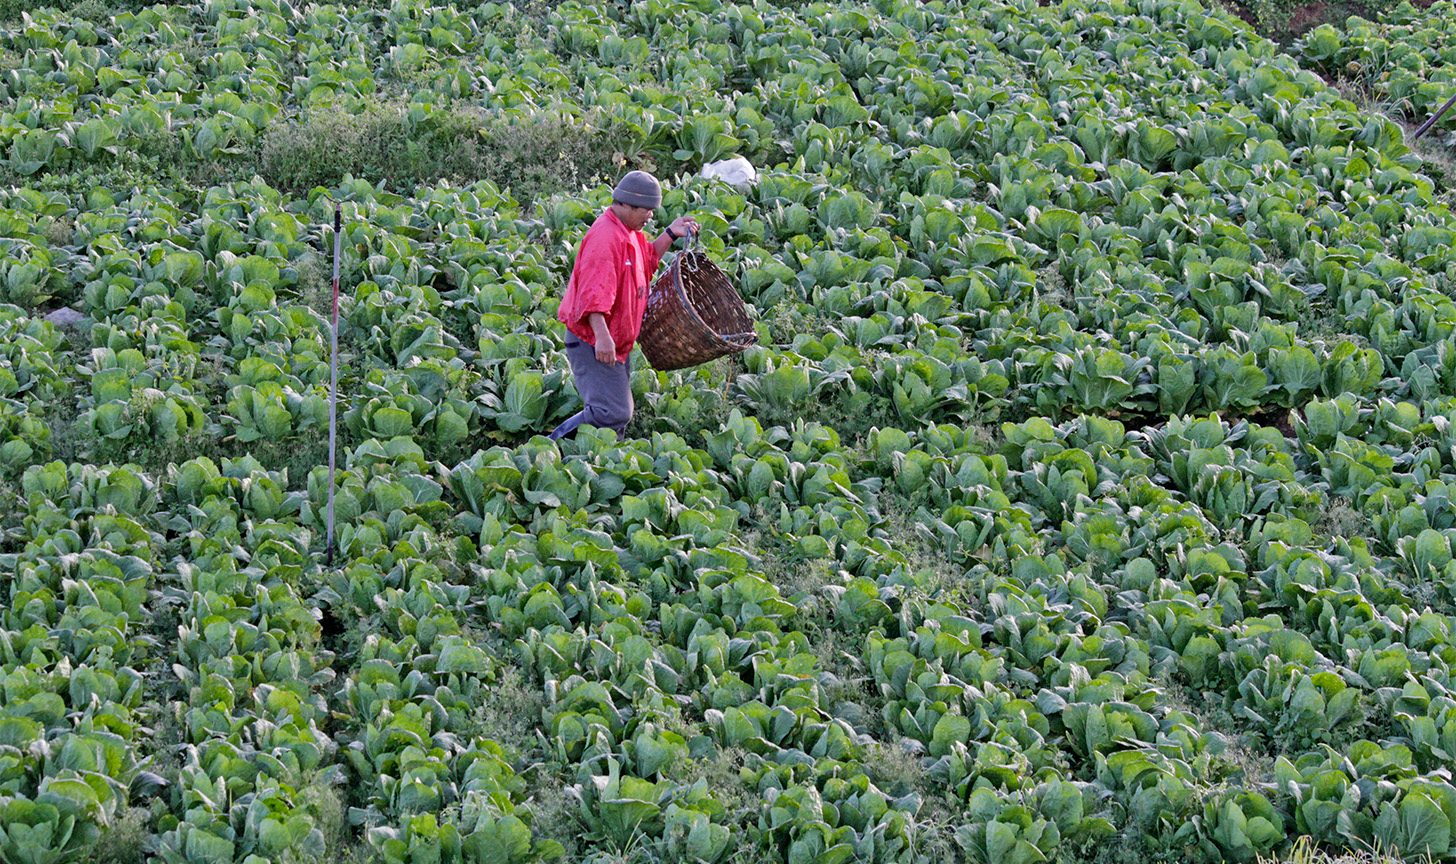 More jobs in a green economy – ILO report